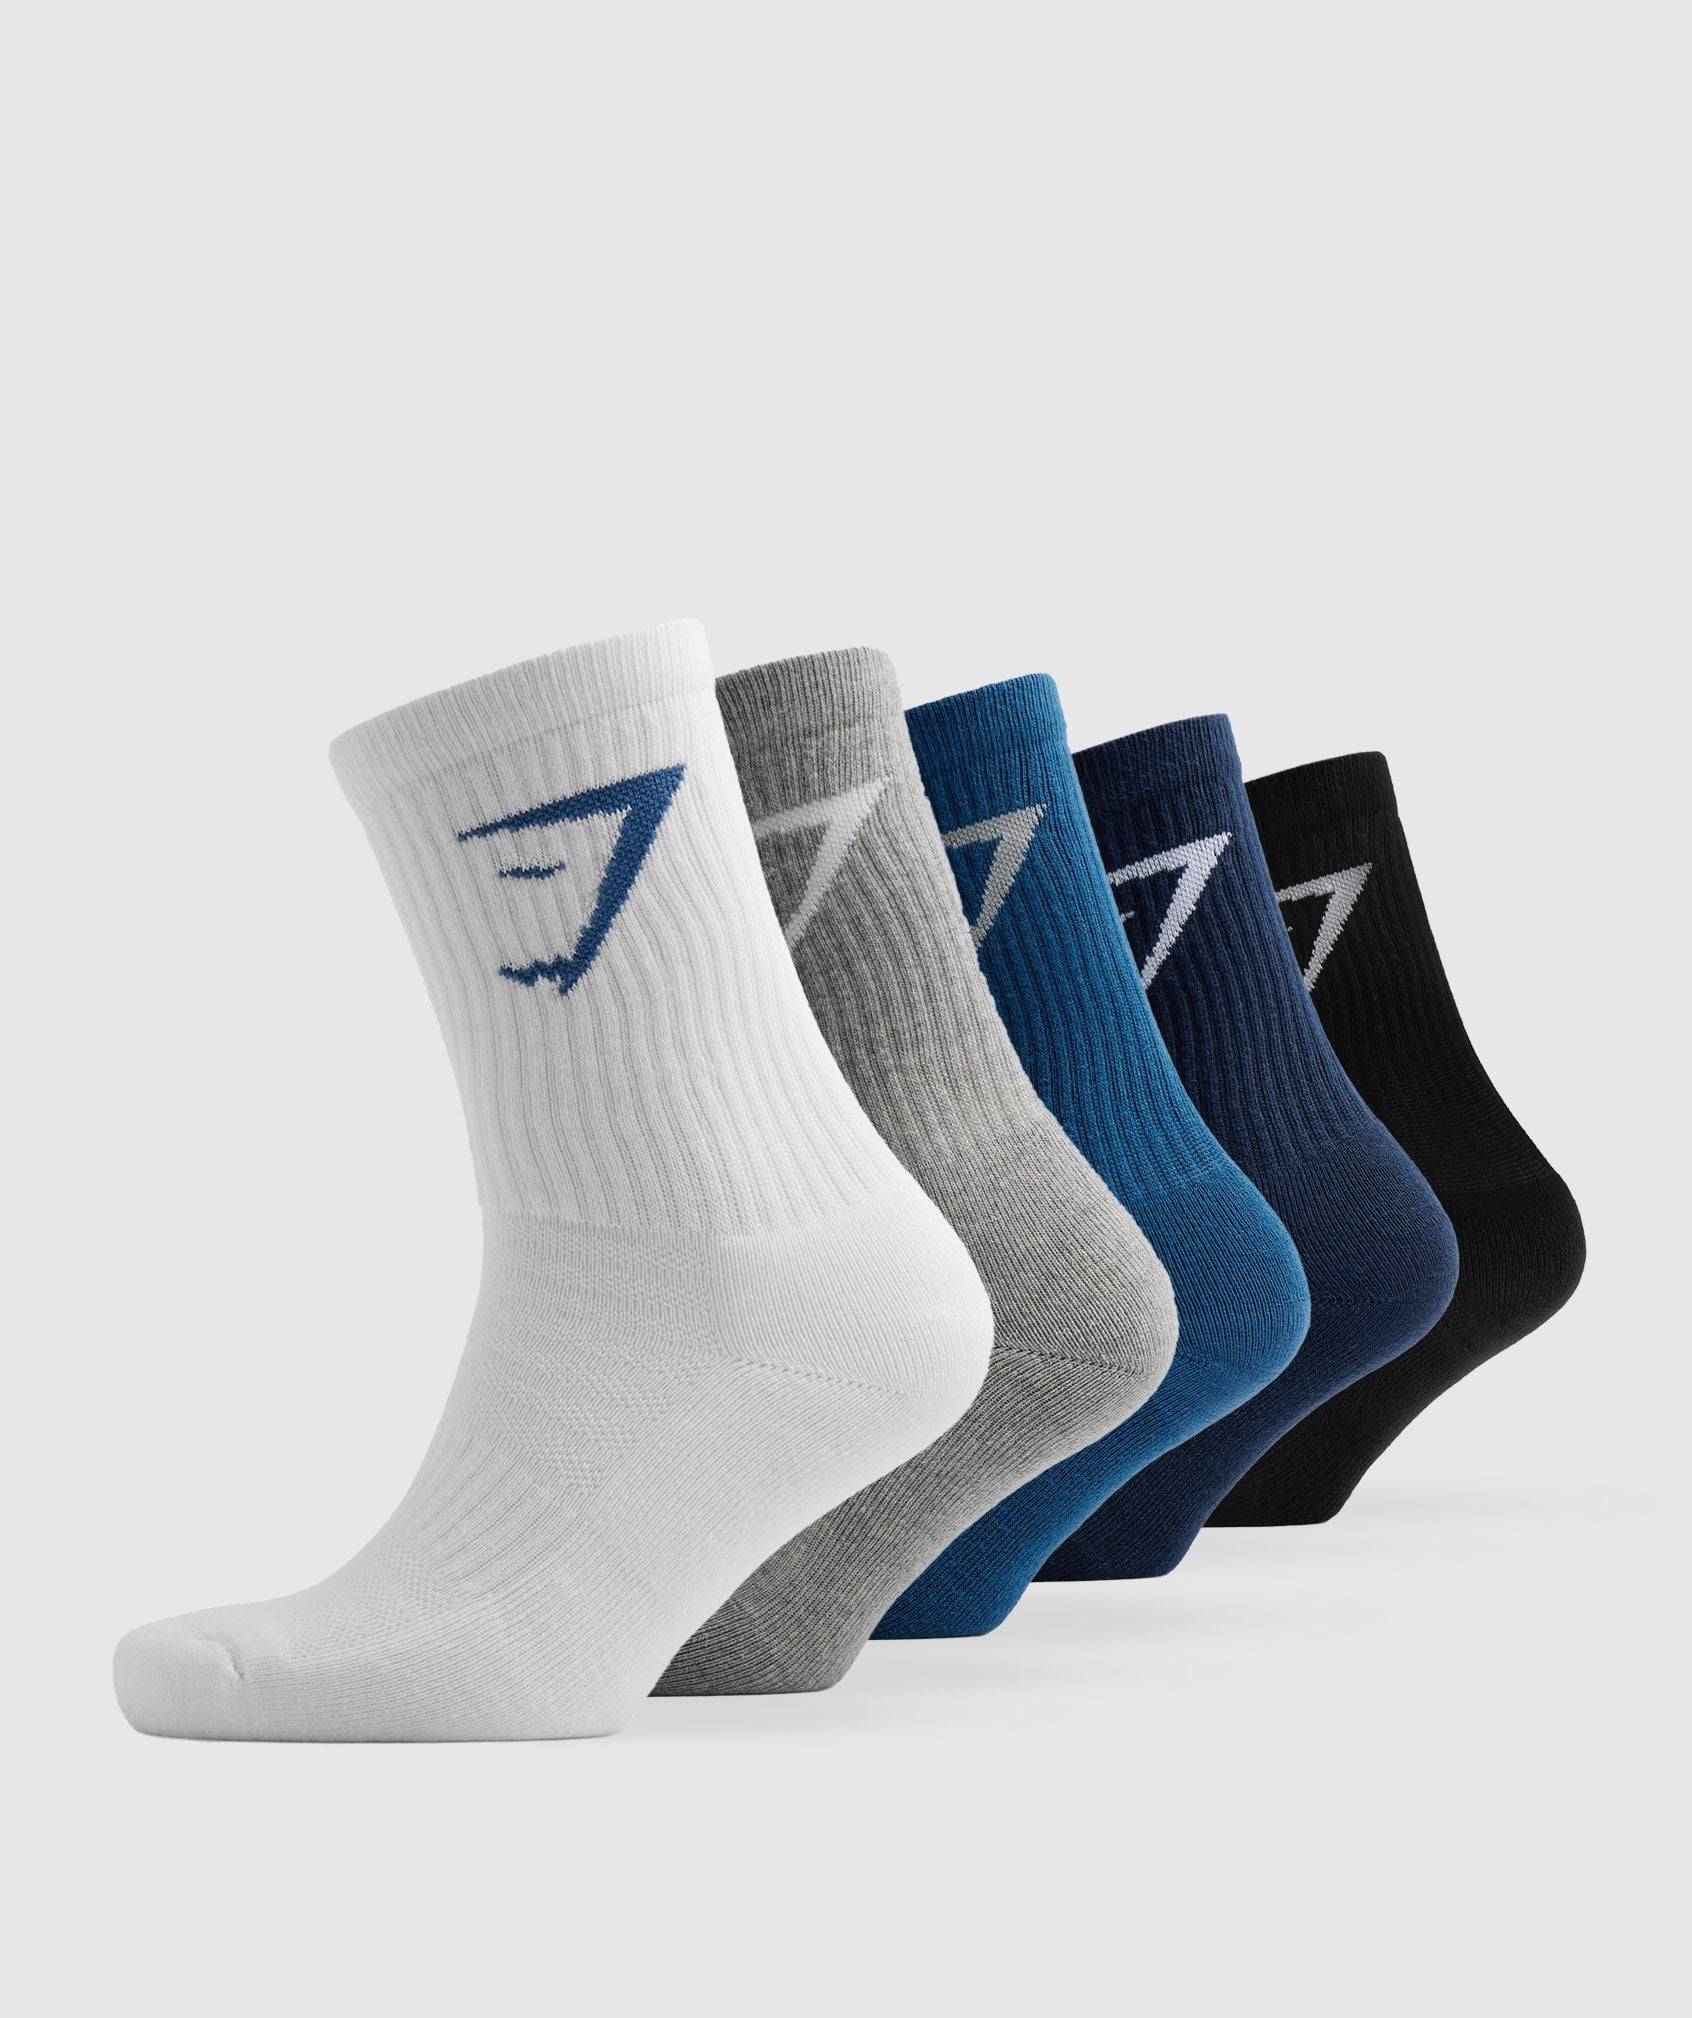 Crew Socks 5pk in White/Black/Grey/Blue/Navy